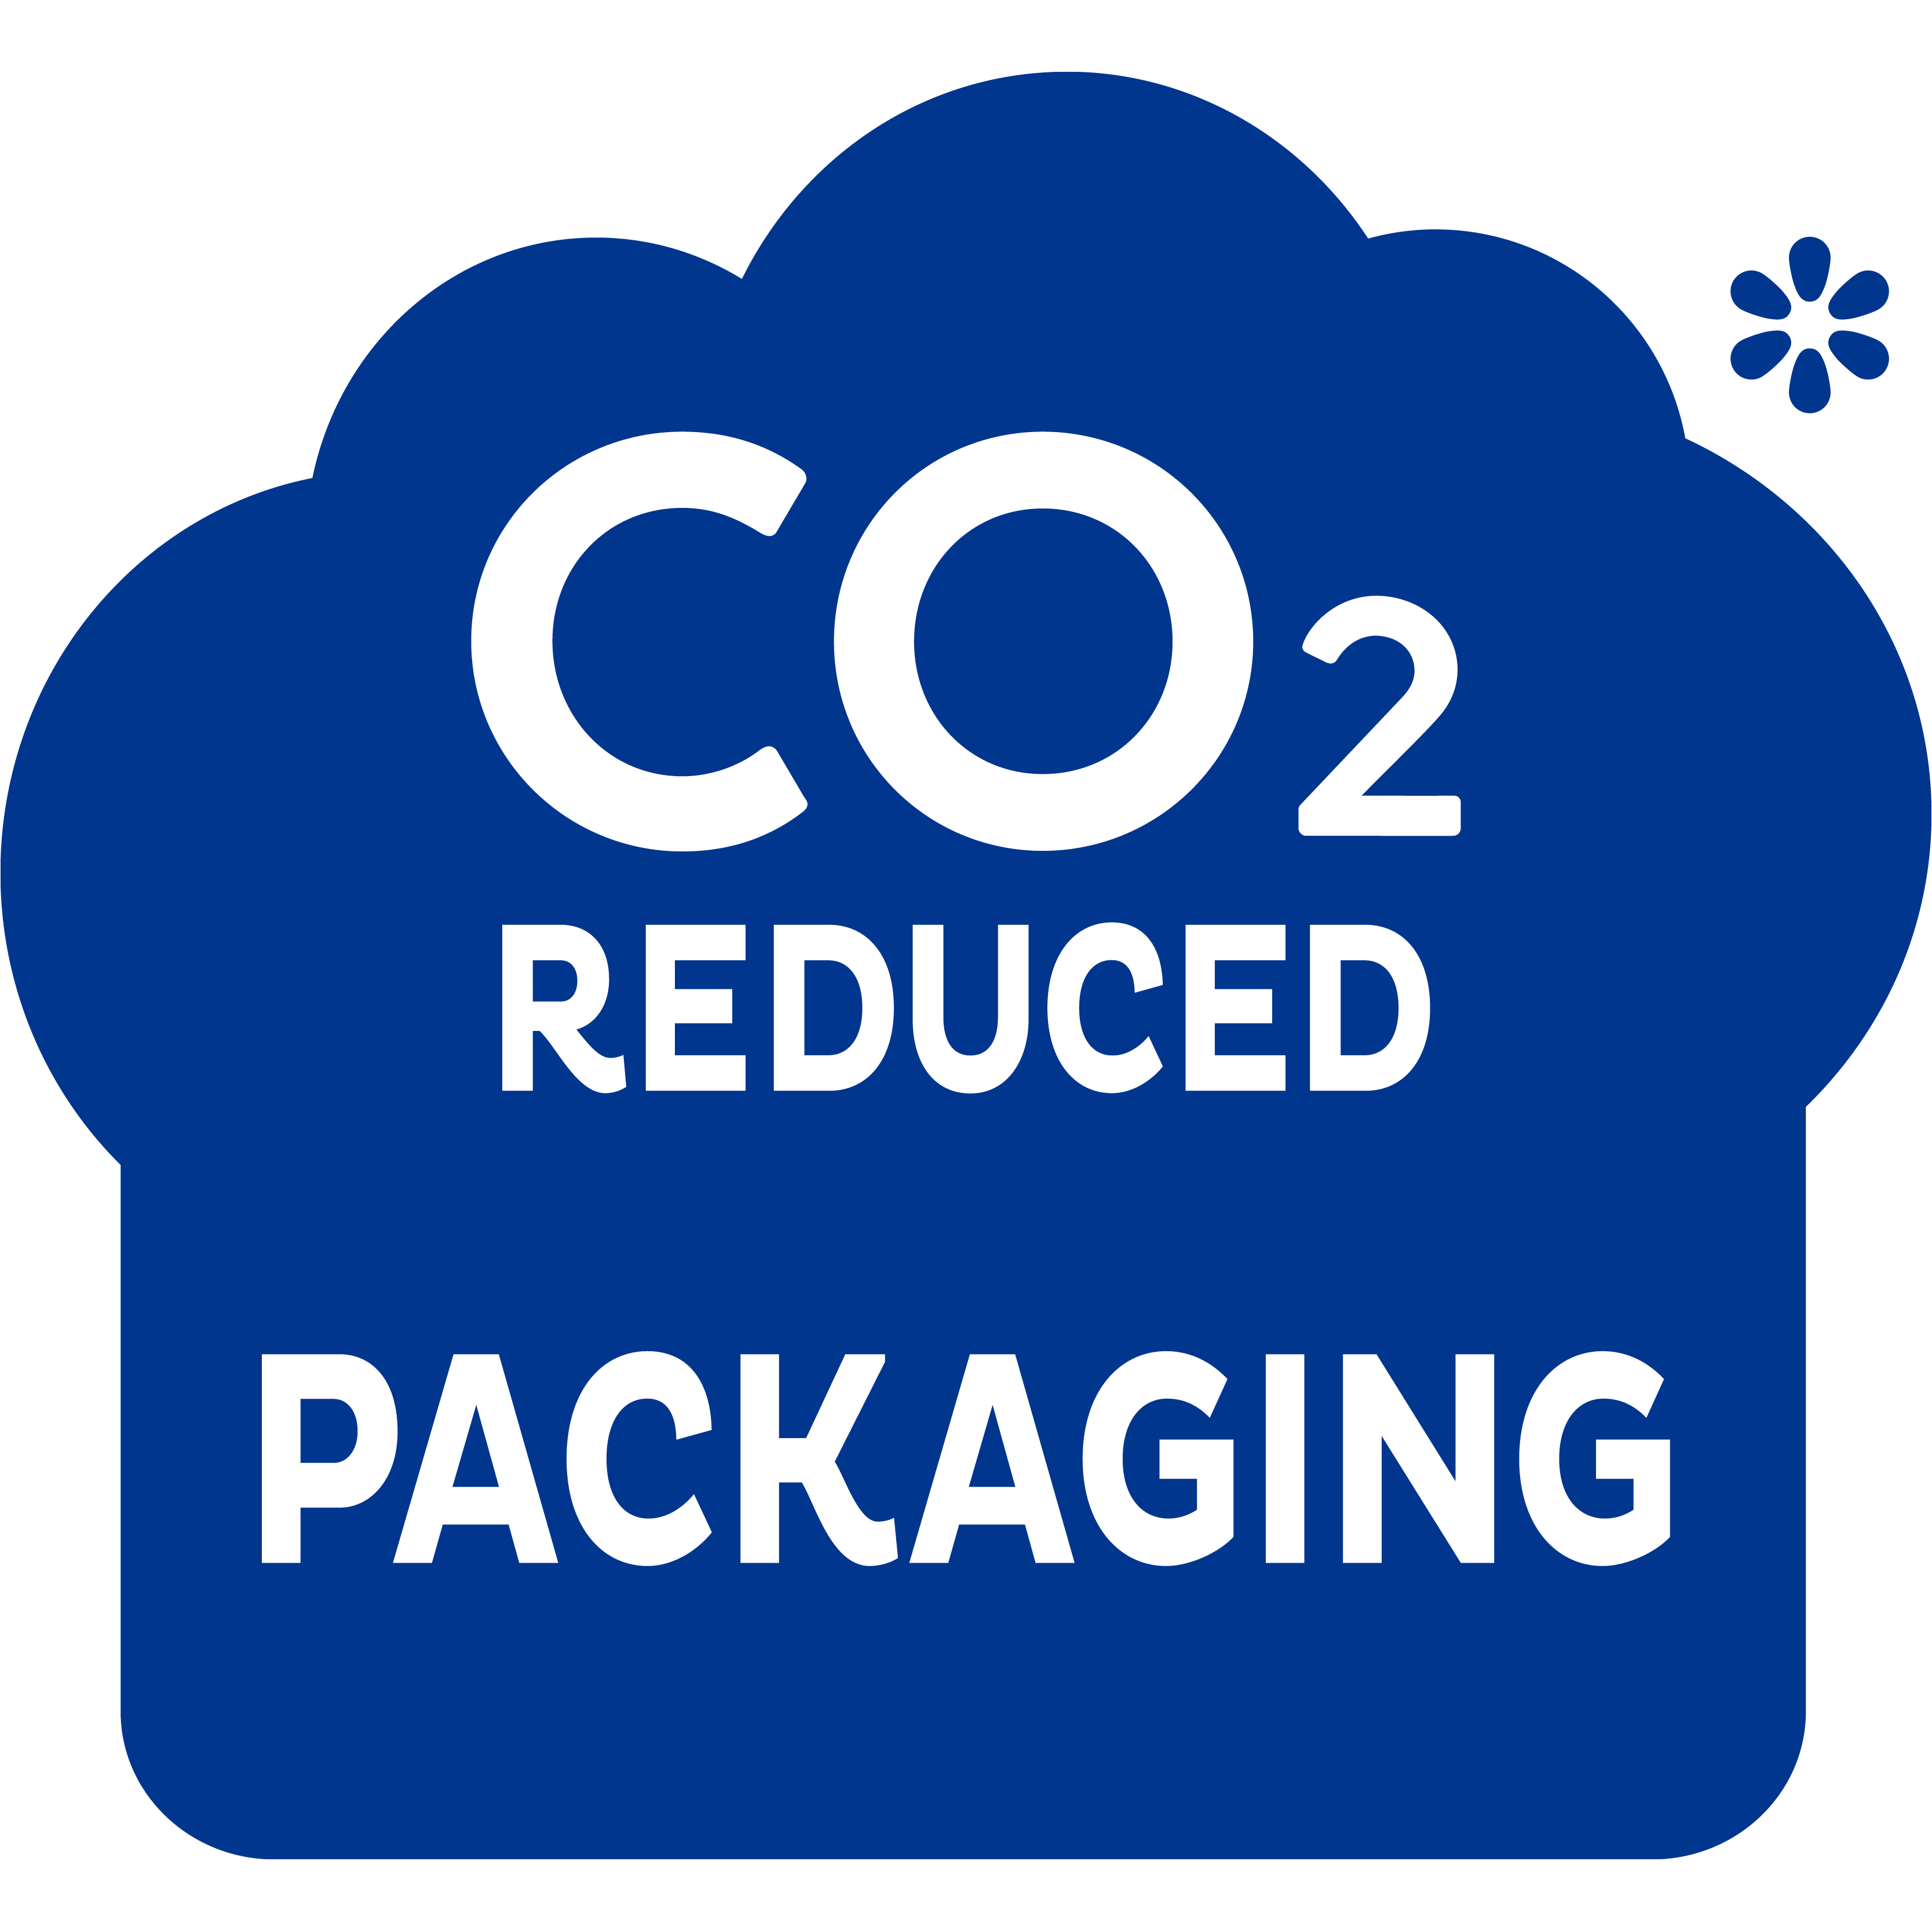 Mažesnis CO2 teršalų kiekis pakuotės gamyboje – žingsnis teisinga kryptimi